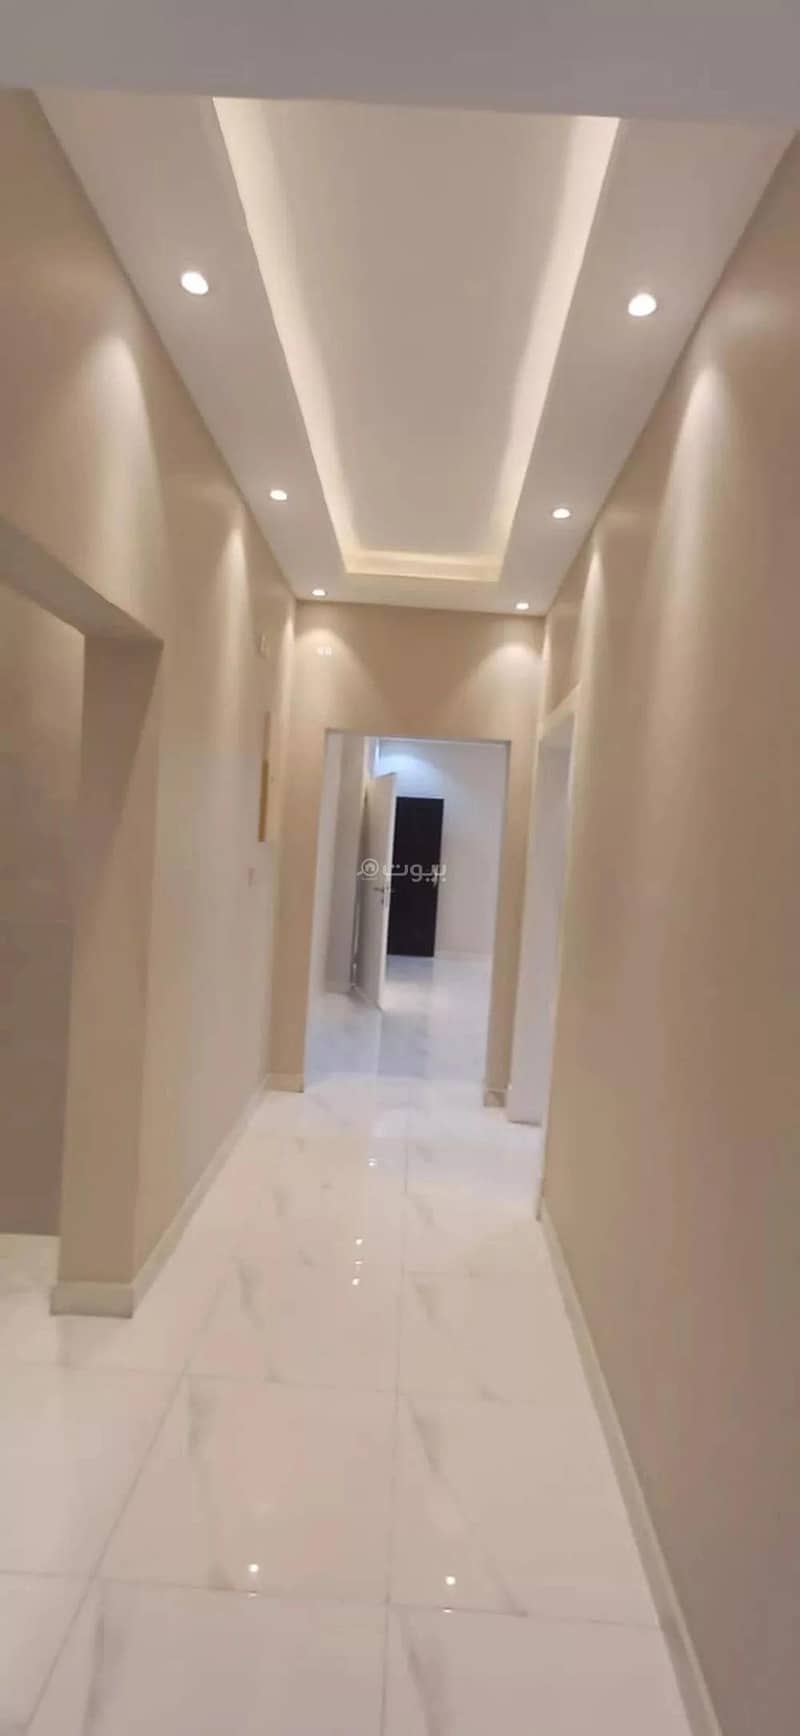 شقة 4 غرف للإيجار في حي النرجس، الرياض